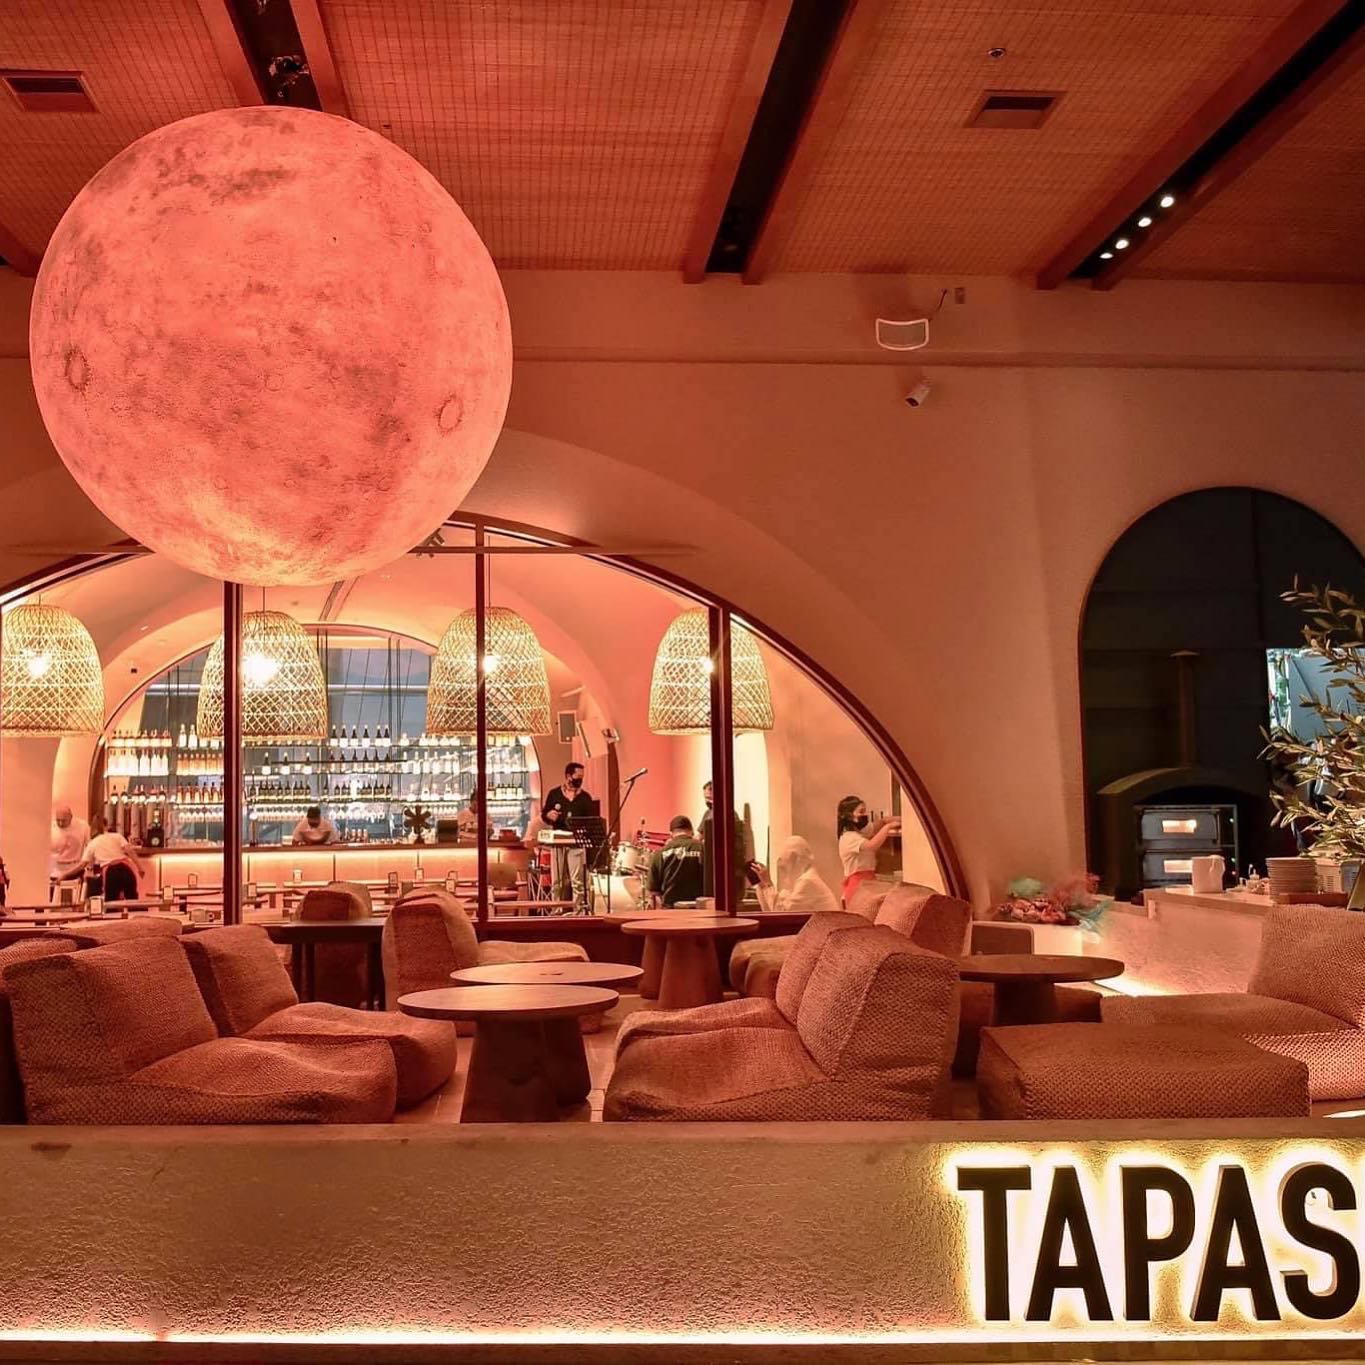 Tapas Music Bar by VASO (Tapas Music Bar by VASO) : กรุงเทพมหานคร (Bangkok)